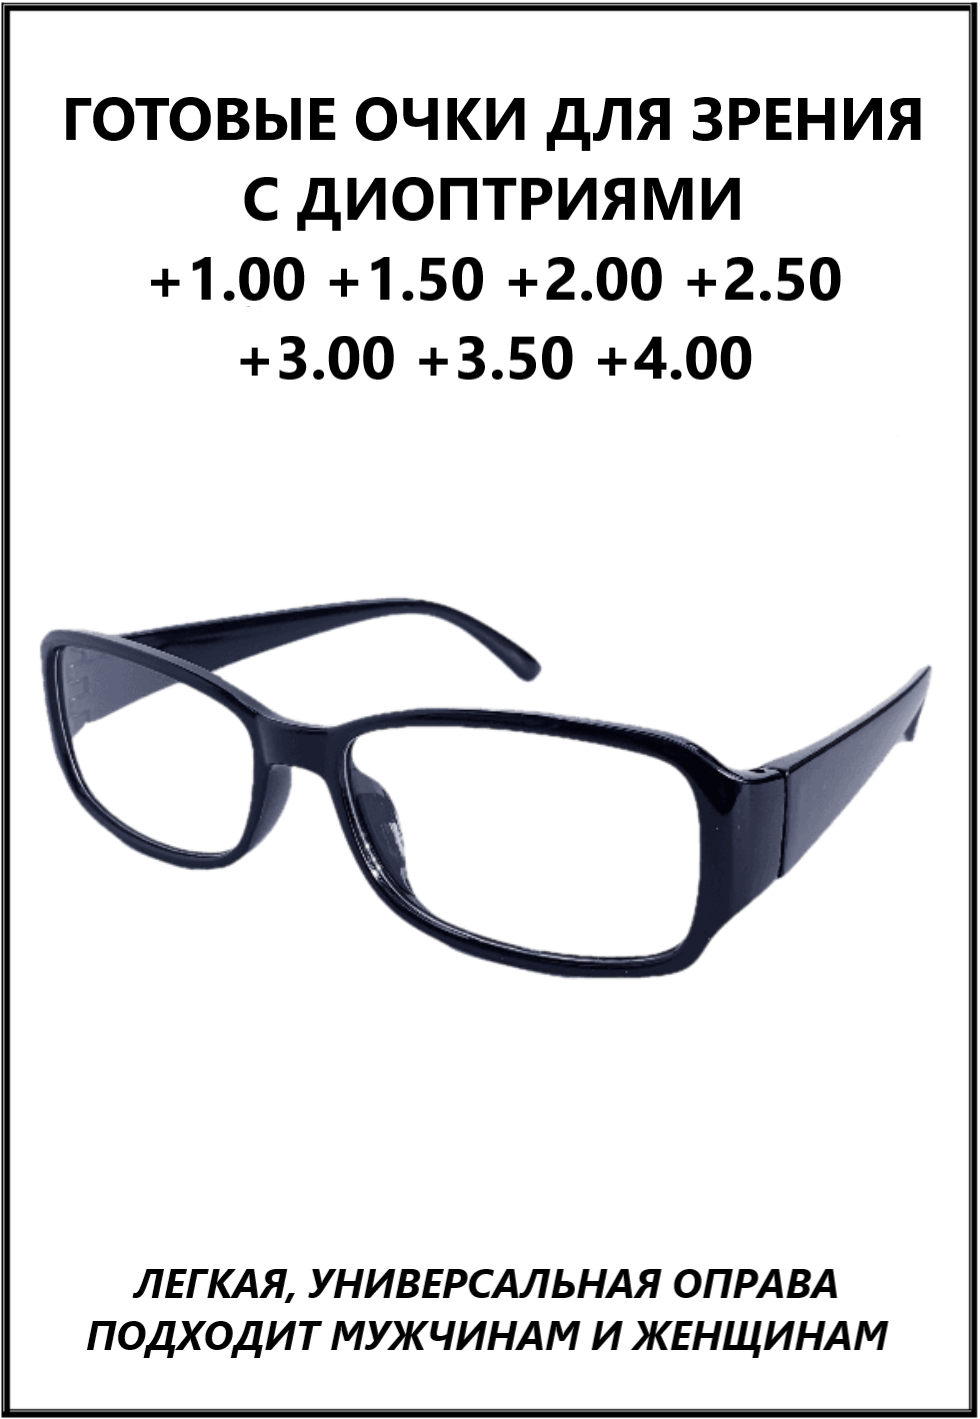 Очки готовые пластиковые женские мужские +2.50 корригирующие зрения для чтения, купить оптику плюс с диоптриями и прозрачными линзами.